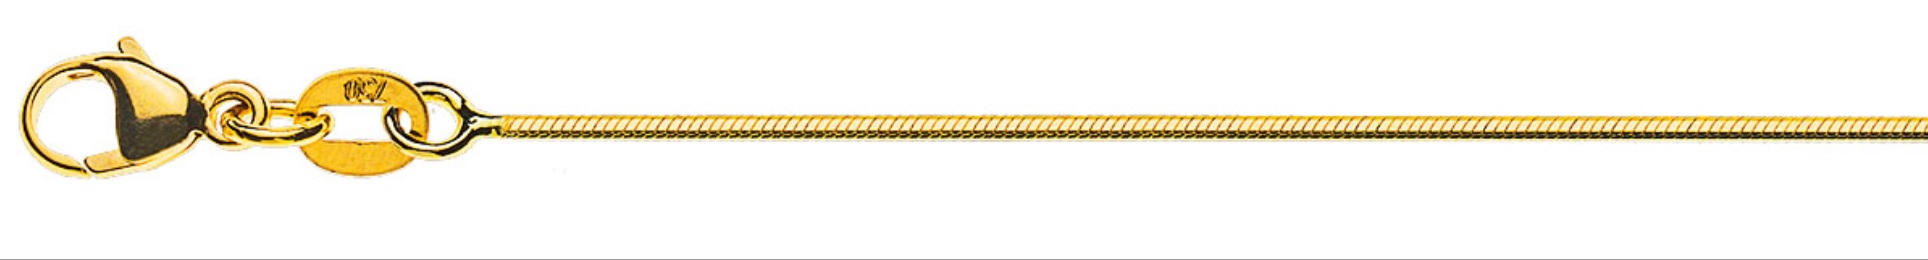 AURONOS Prestige Collier en or jaune 18K serpent diamanté 42cm 1.0mm